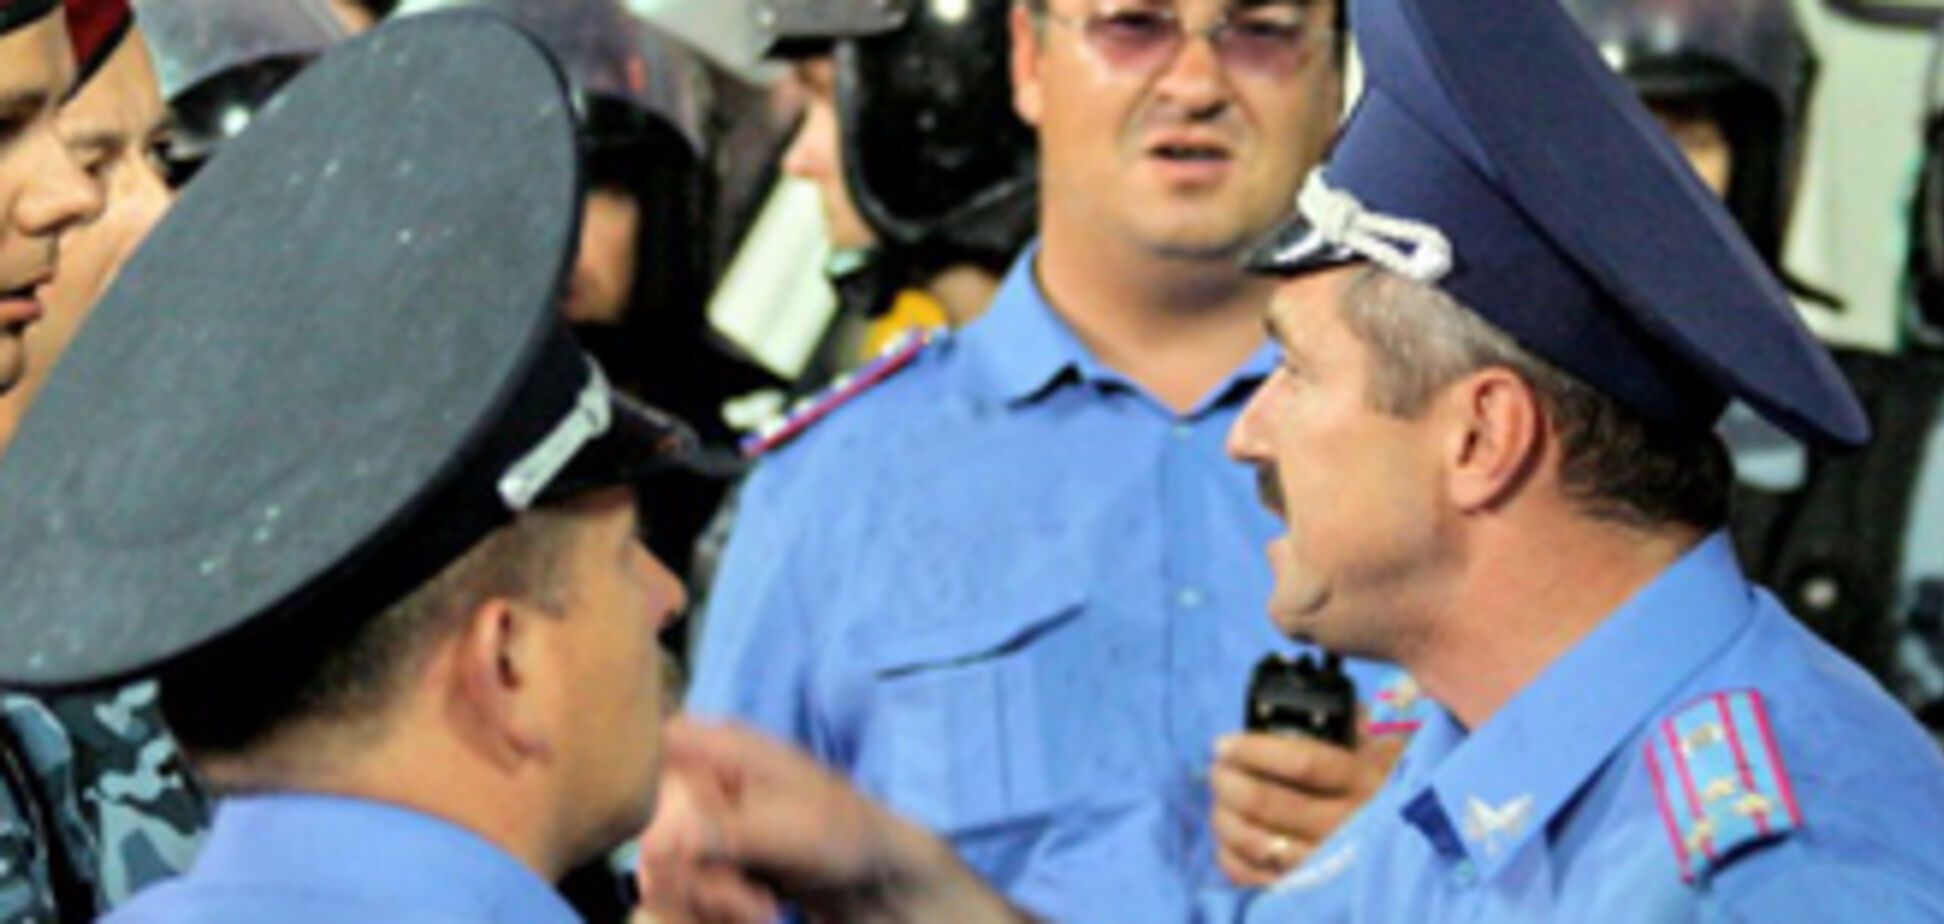 Міліція: Побитий журналіст випив літр горілки